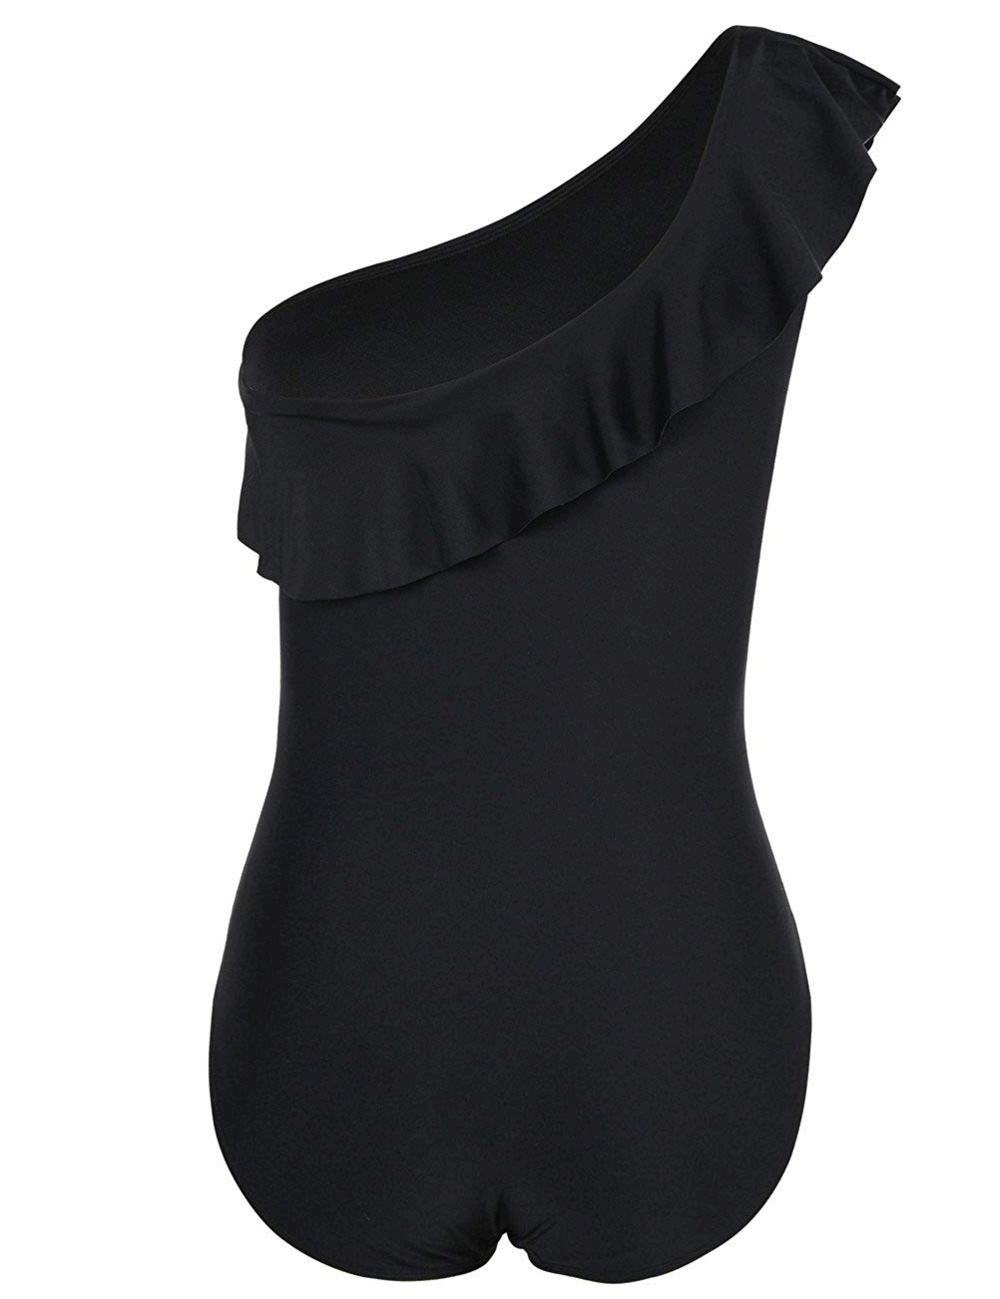 Hilor Women's One Piece Swimsuits One Shoulder Swimwear, Black, Size 14 ...